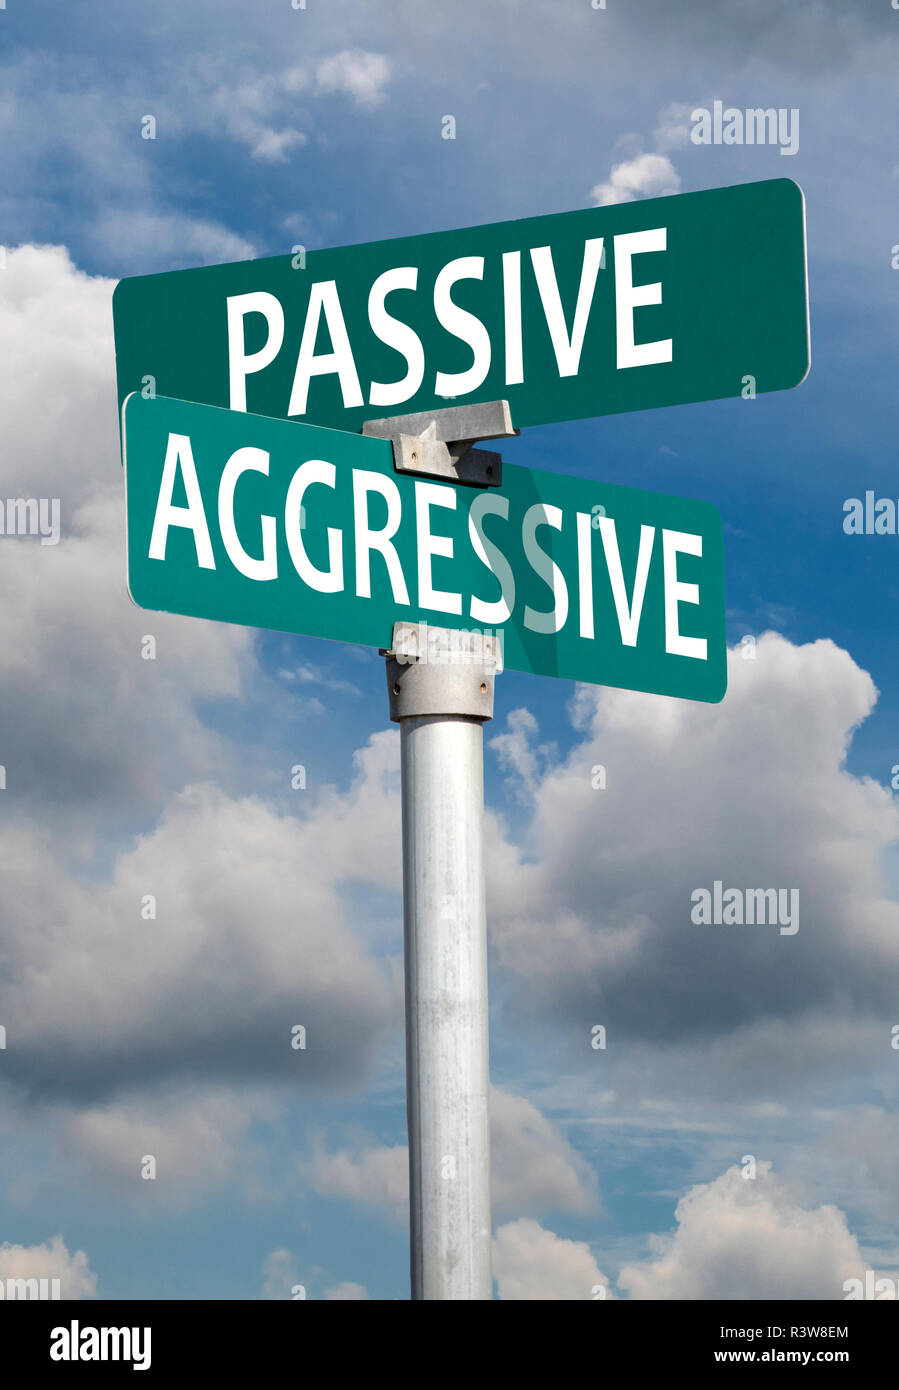 Passive aggressive sign Stock Photo